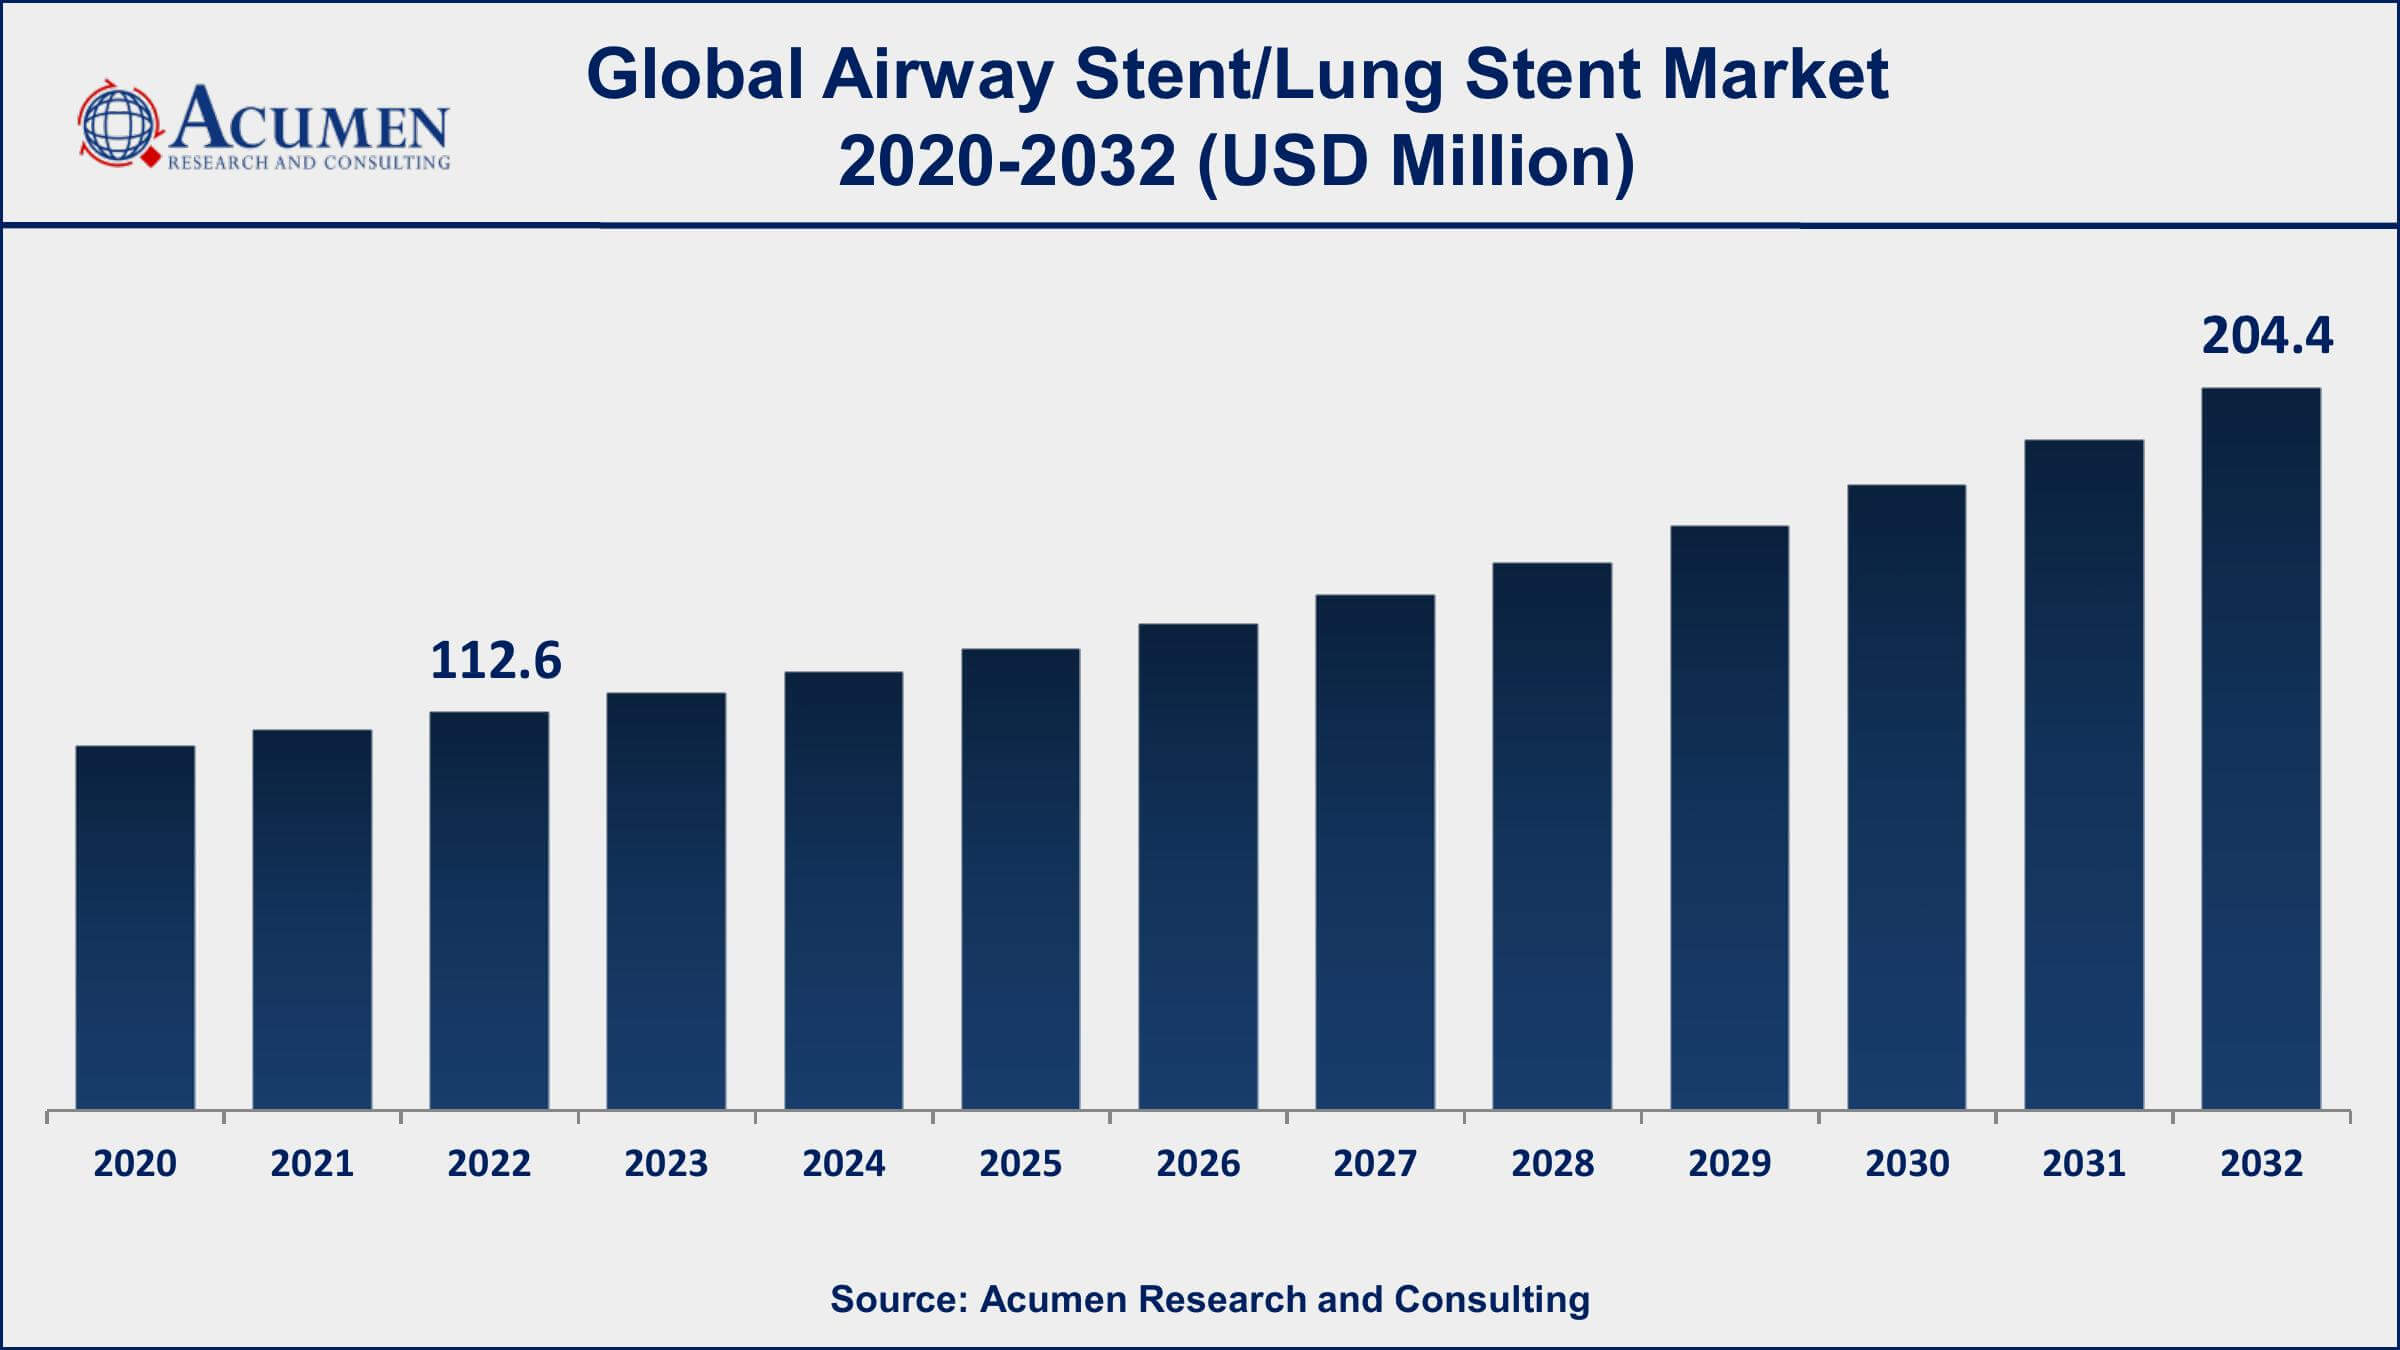 Airway Stent/Lung Stent Market Analysis Period